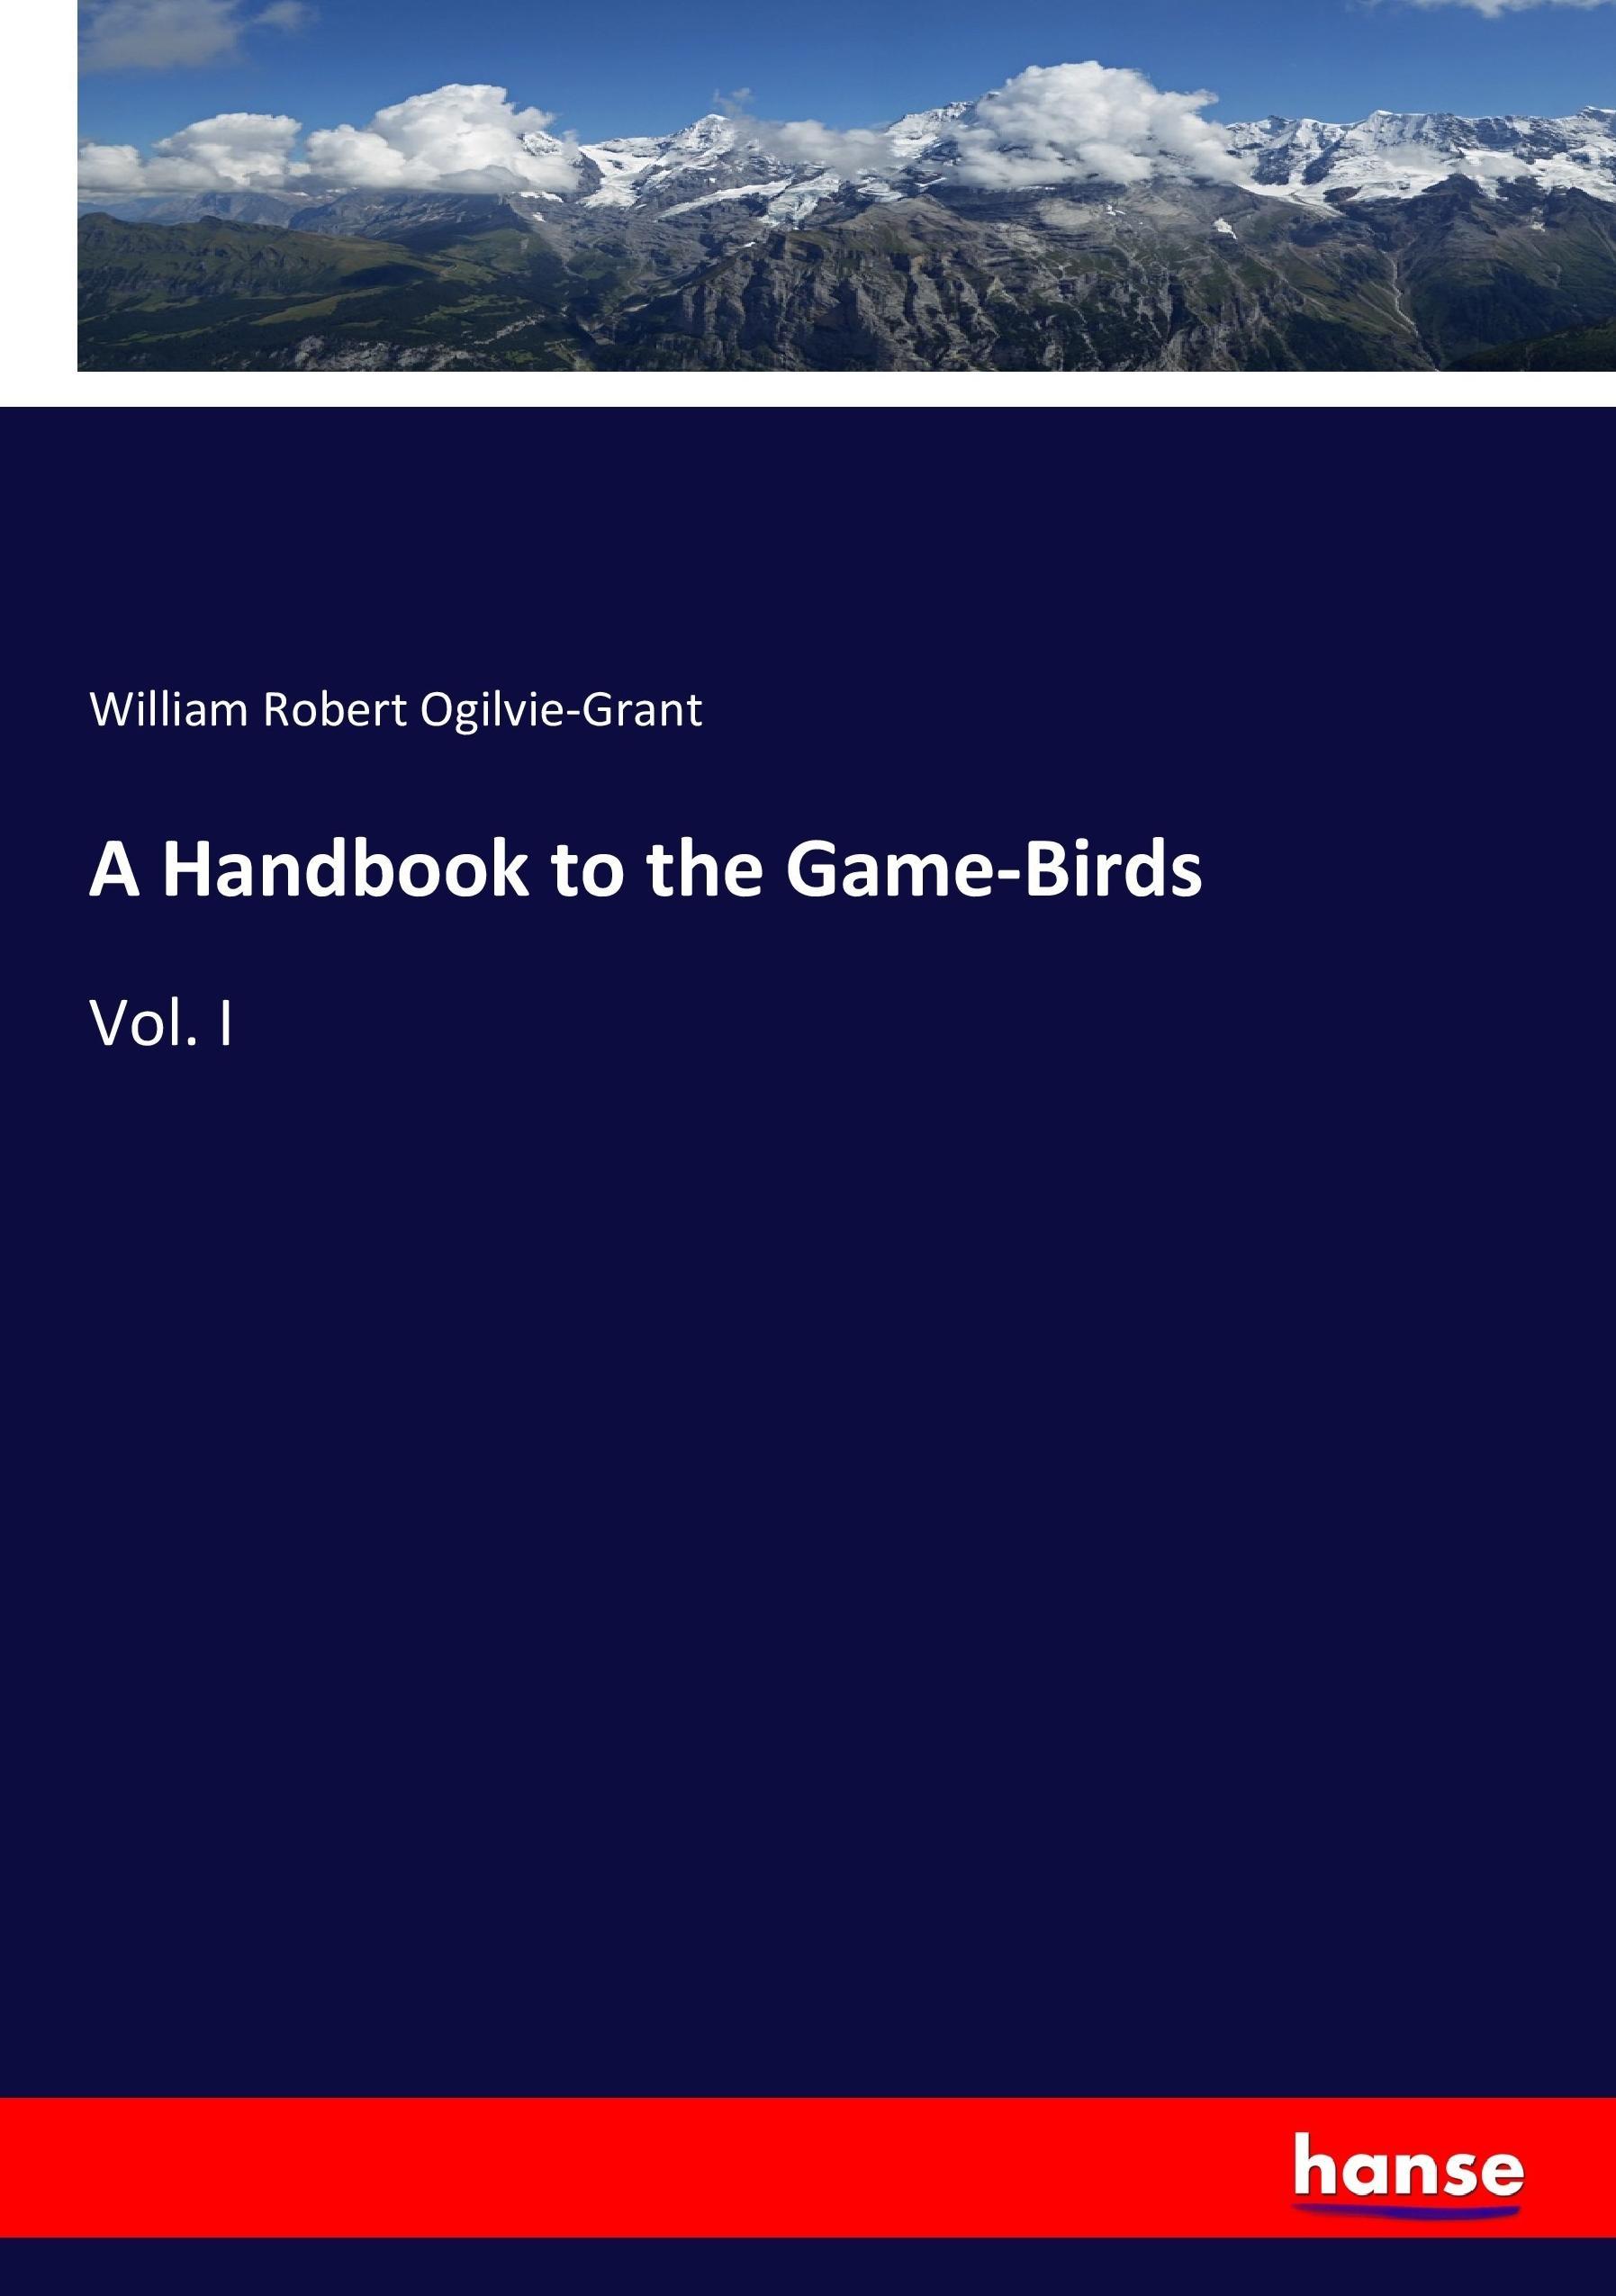 A Handbook to the Game-Birds | Vol. I | William Robert Ogilvie-Grant | Taschenbuch | Paperback | 372 S. | Englisch | 2017 | hansebooks | EAN 9783744734424 - Ogilvie-Grant, William Robert